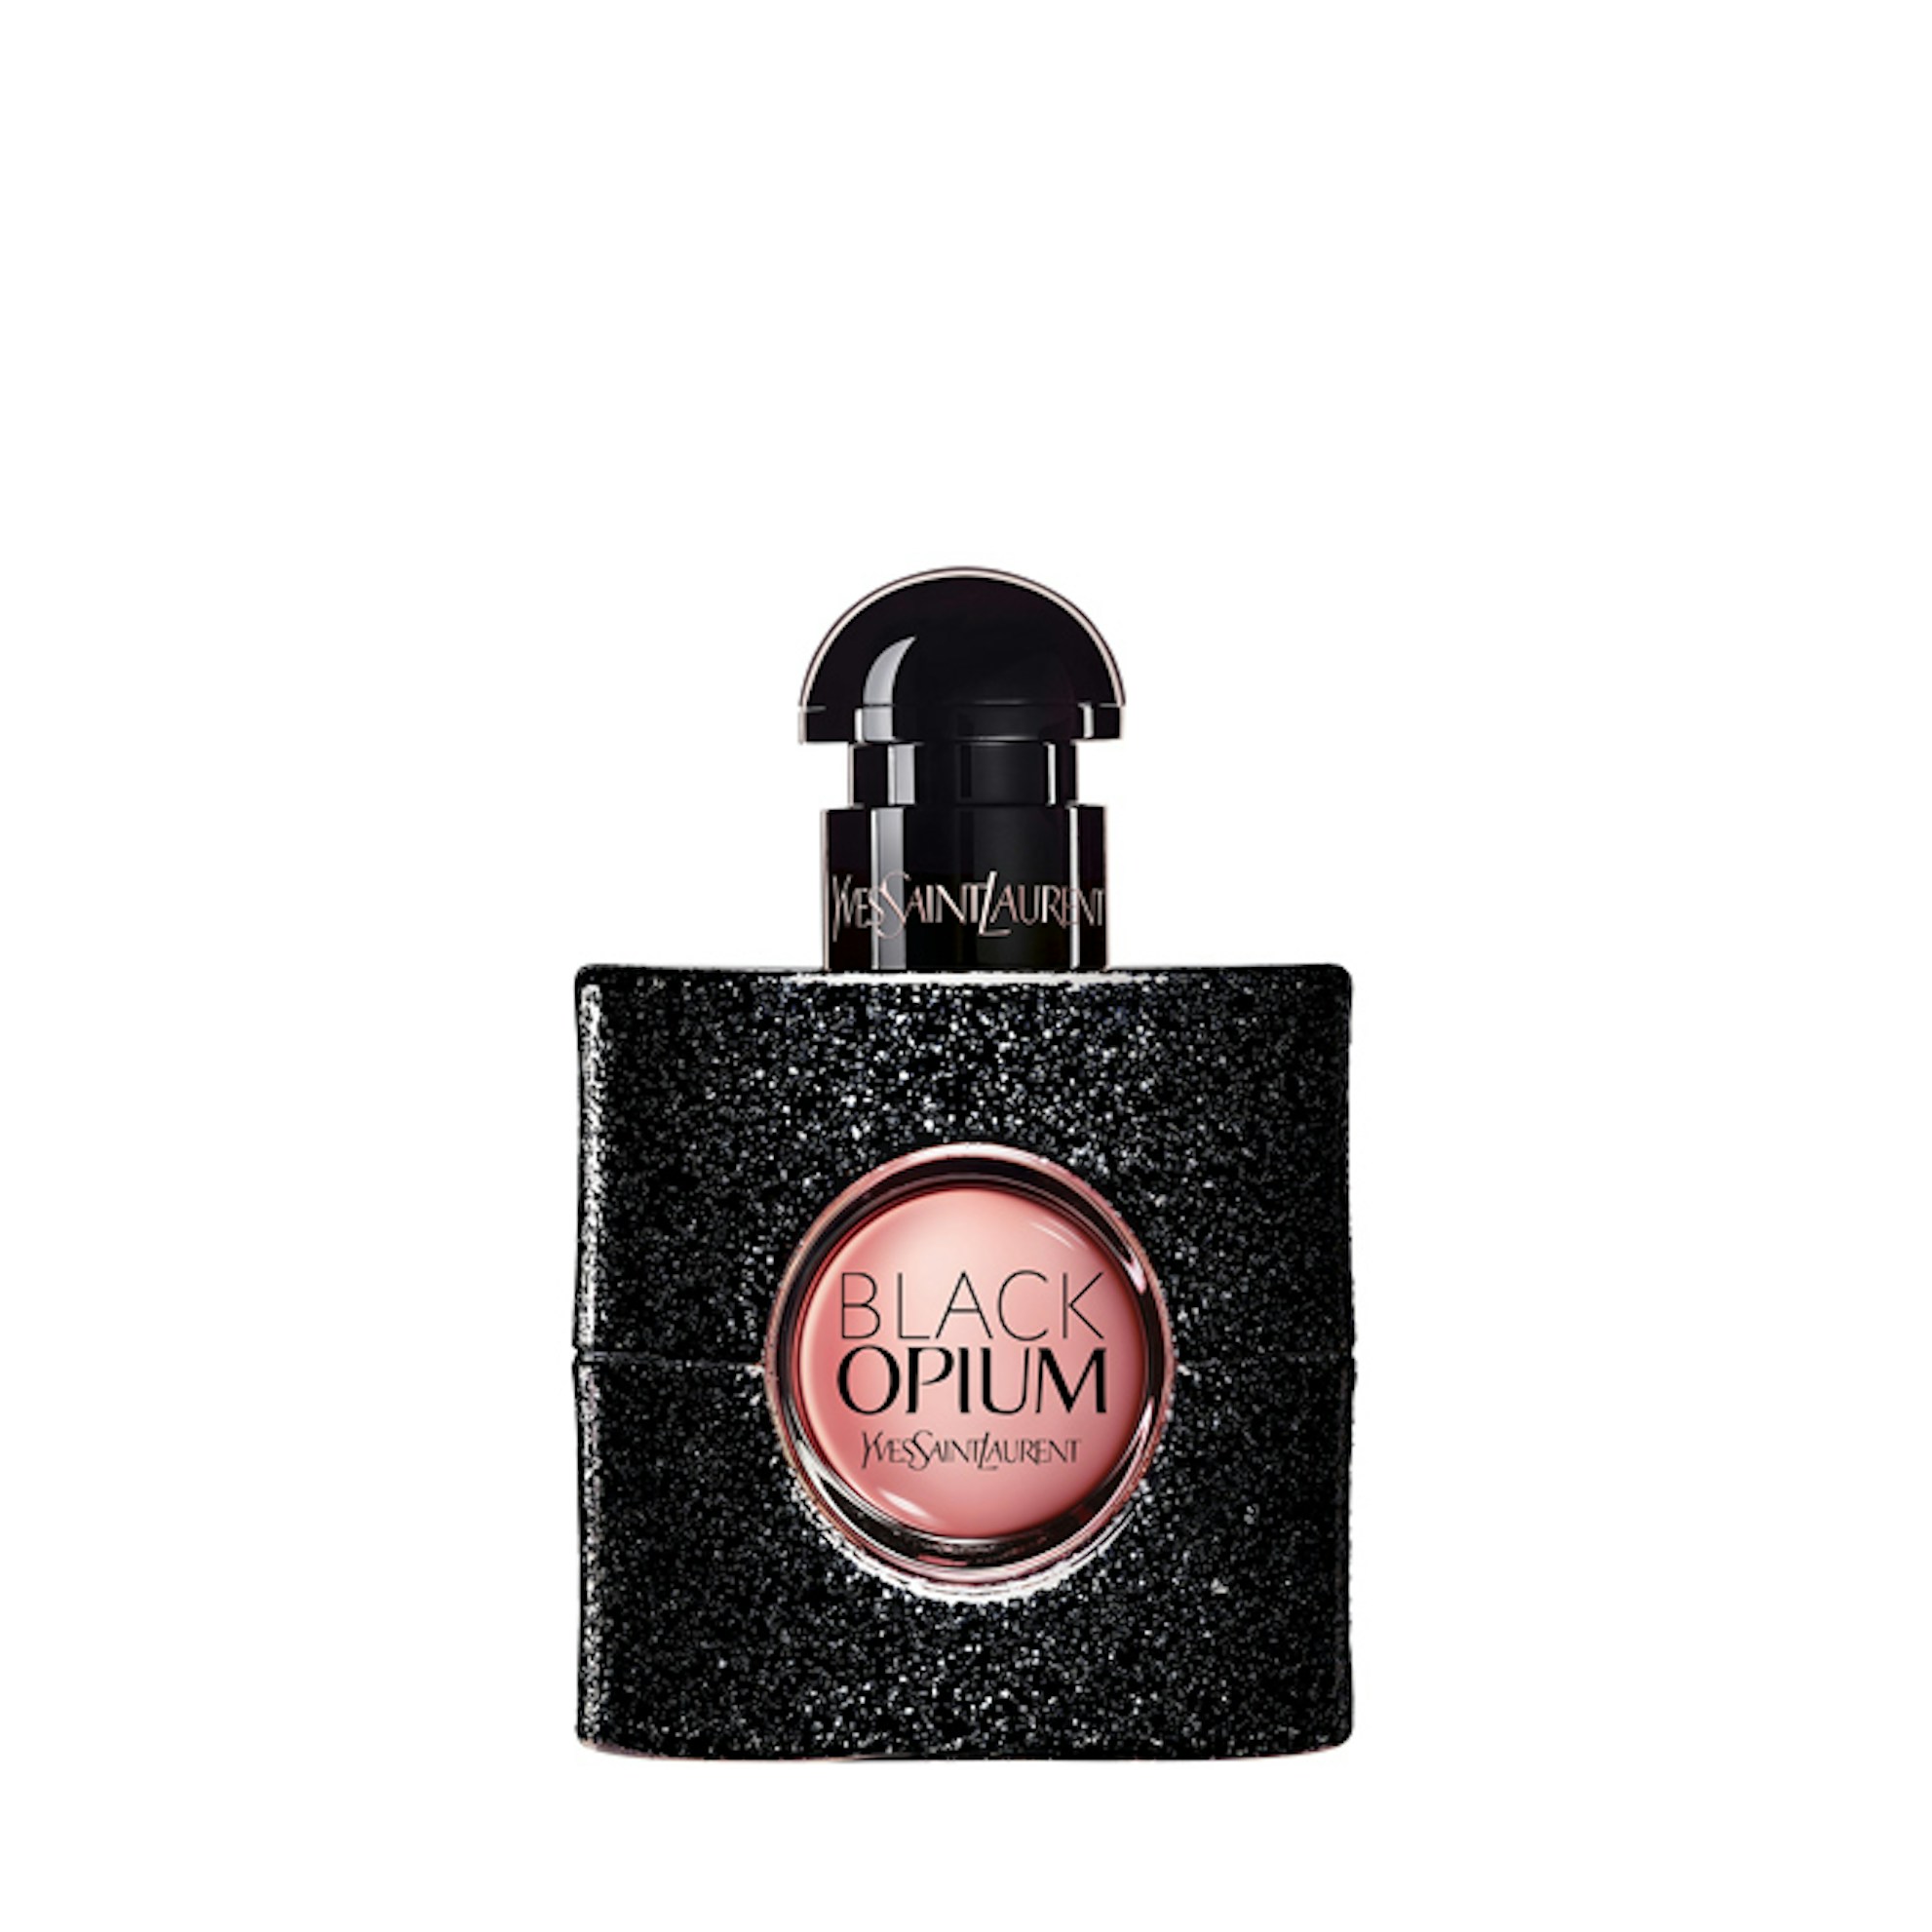 YSL Black Opium Perfume for Women | 30ml | The Fragrance Shop